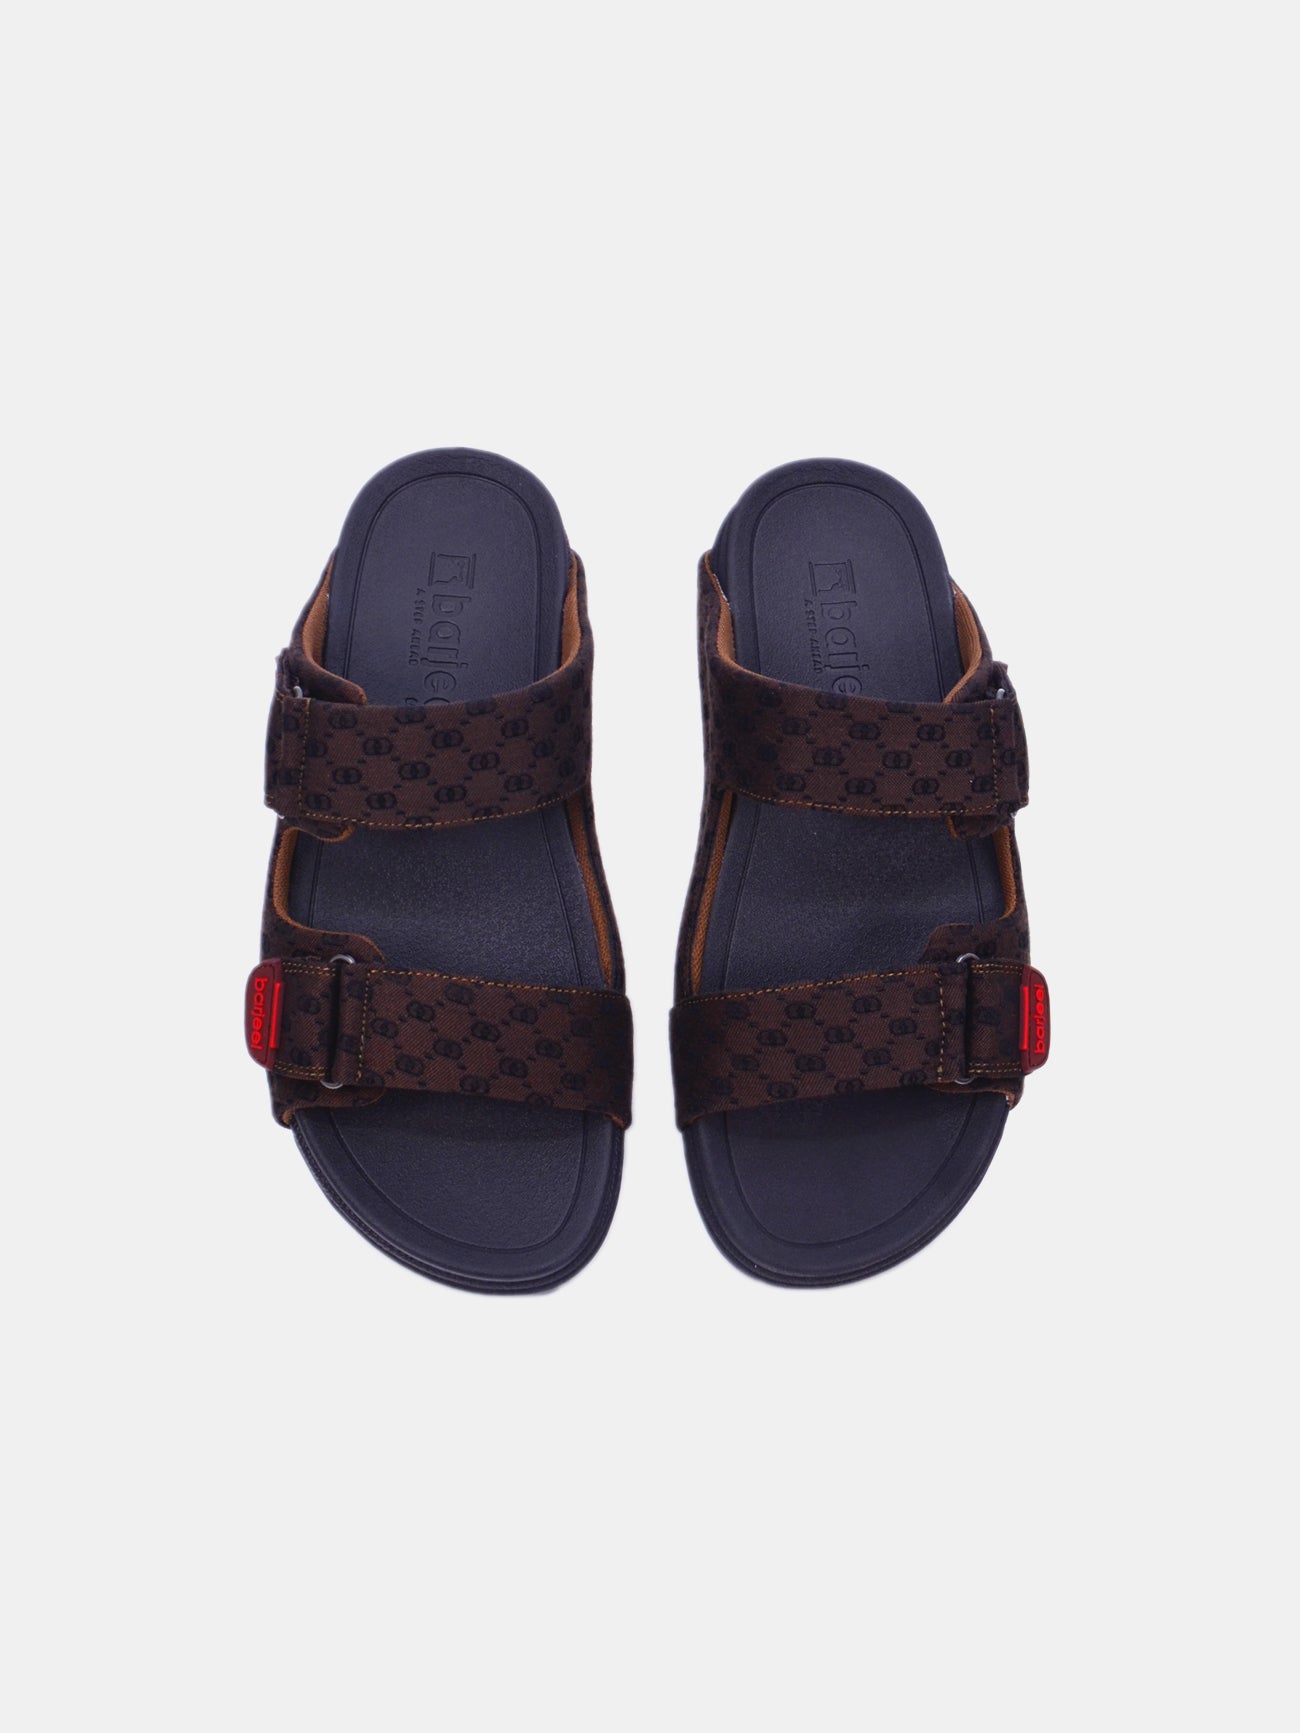 Barjeel Uno 20272-2 Men's Arabic Sandals #color_Brown